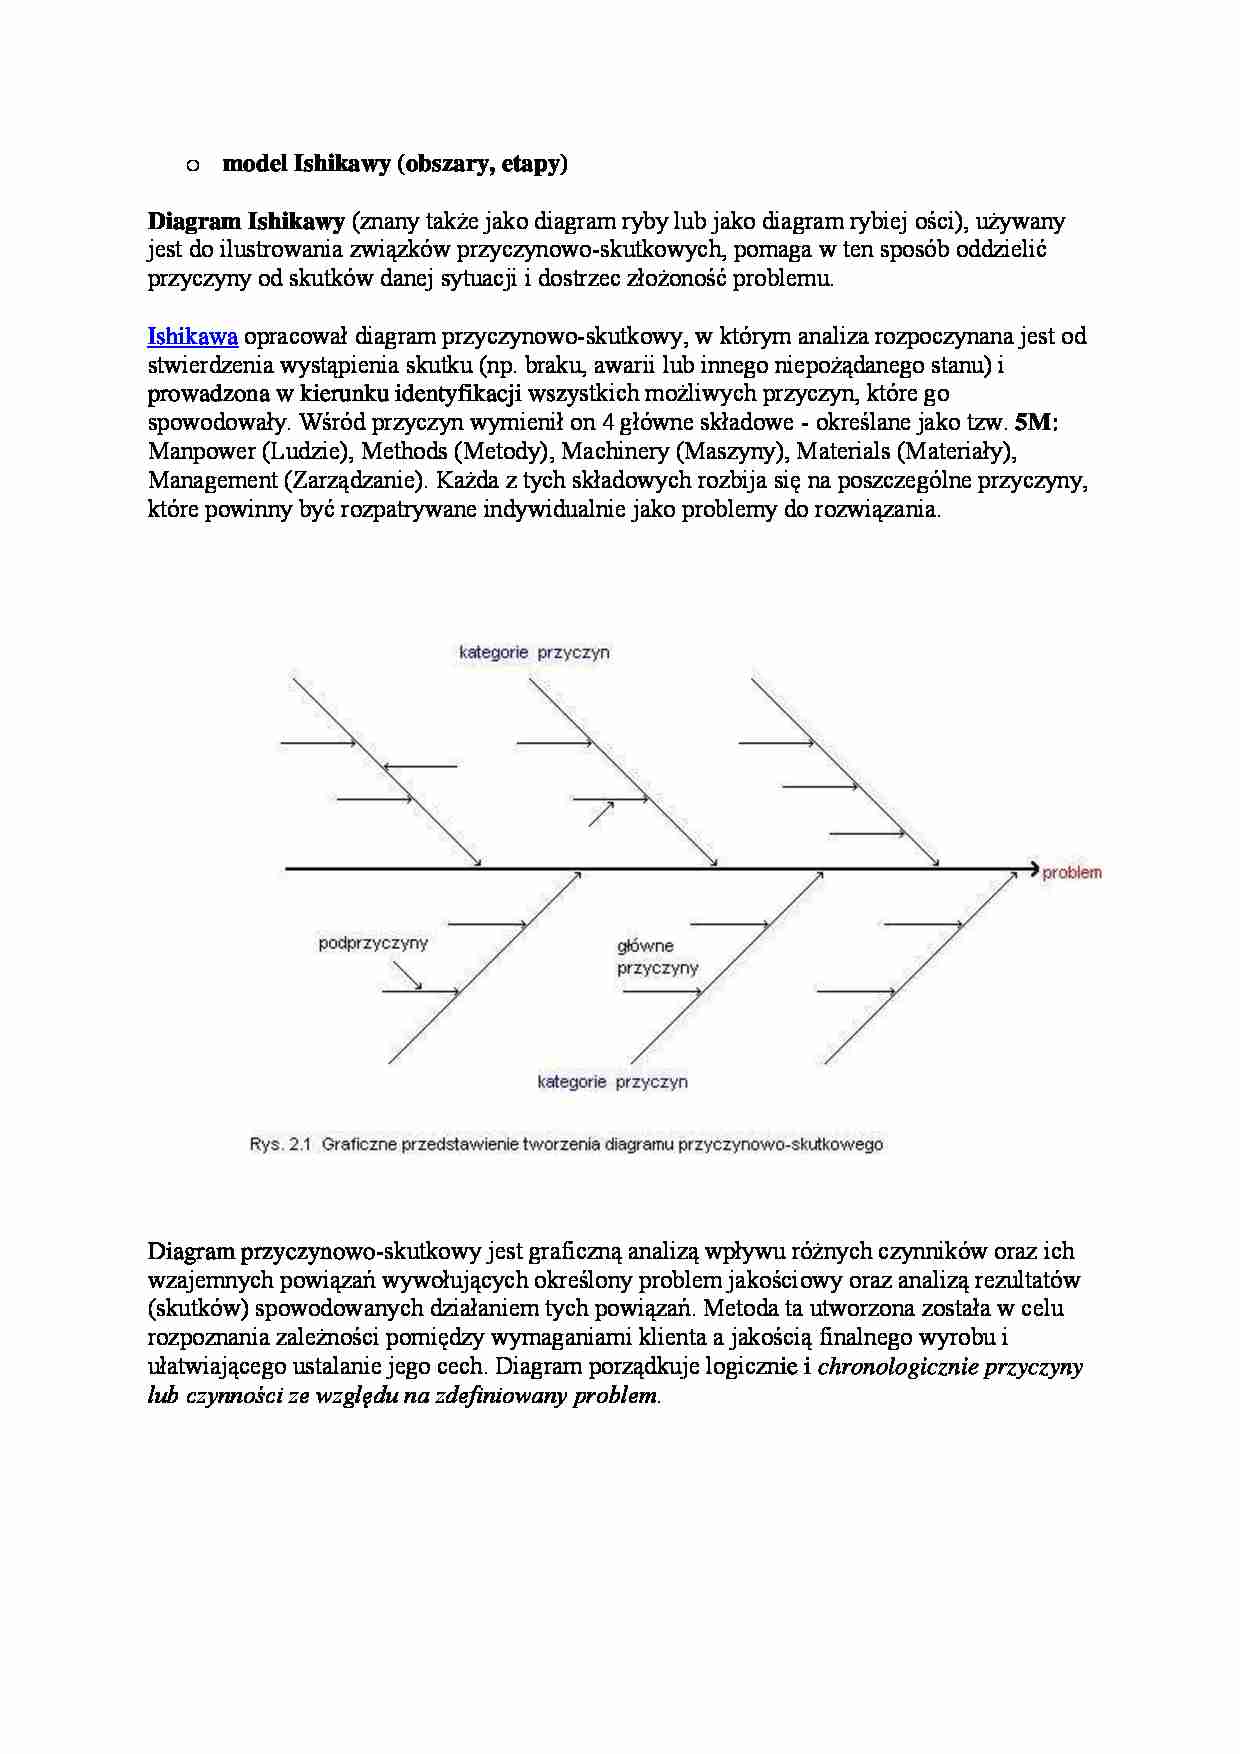 Model diagramu Ishikawy - strona 1